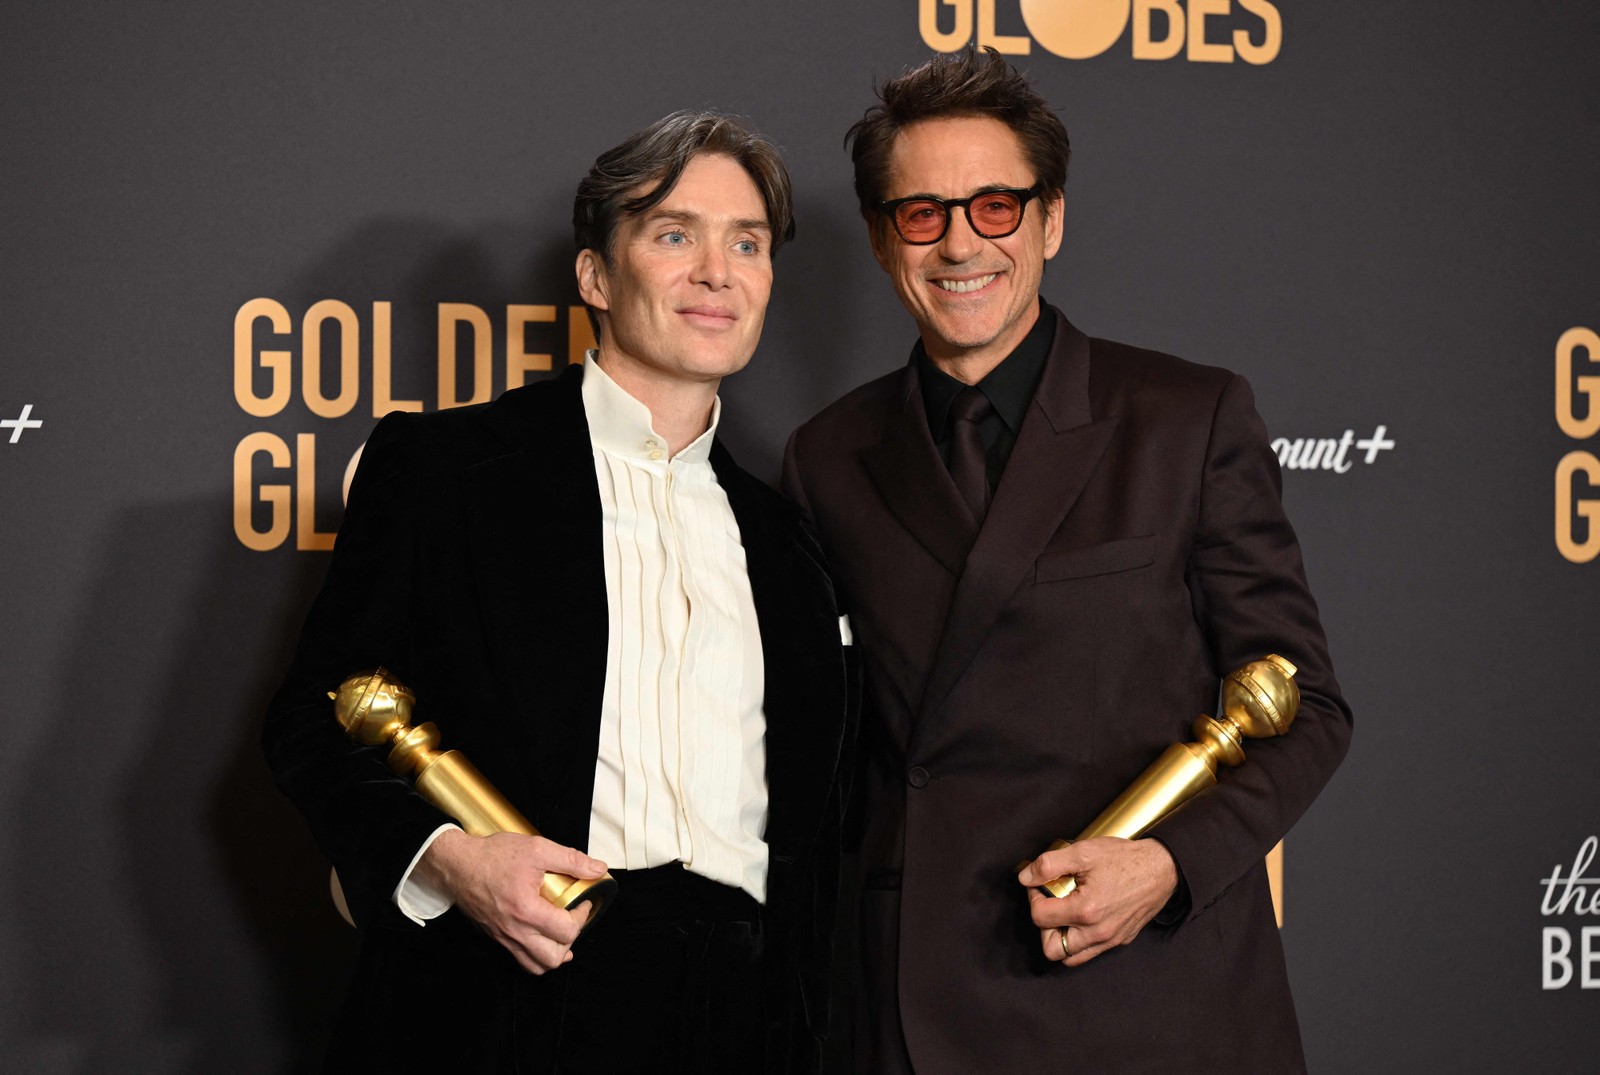 Cillian Murphy e Robert Downey Jr. conquistaram o Globo de Ouro por suas atuações em "Oppenheimer" — Foto: Robyn BECK / AFP